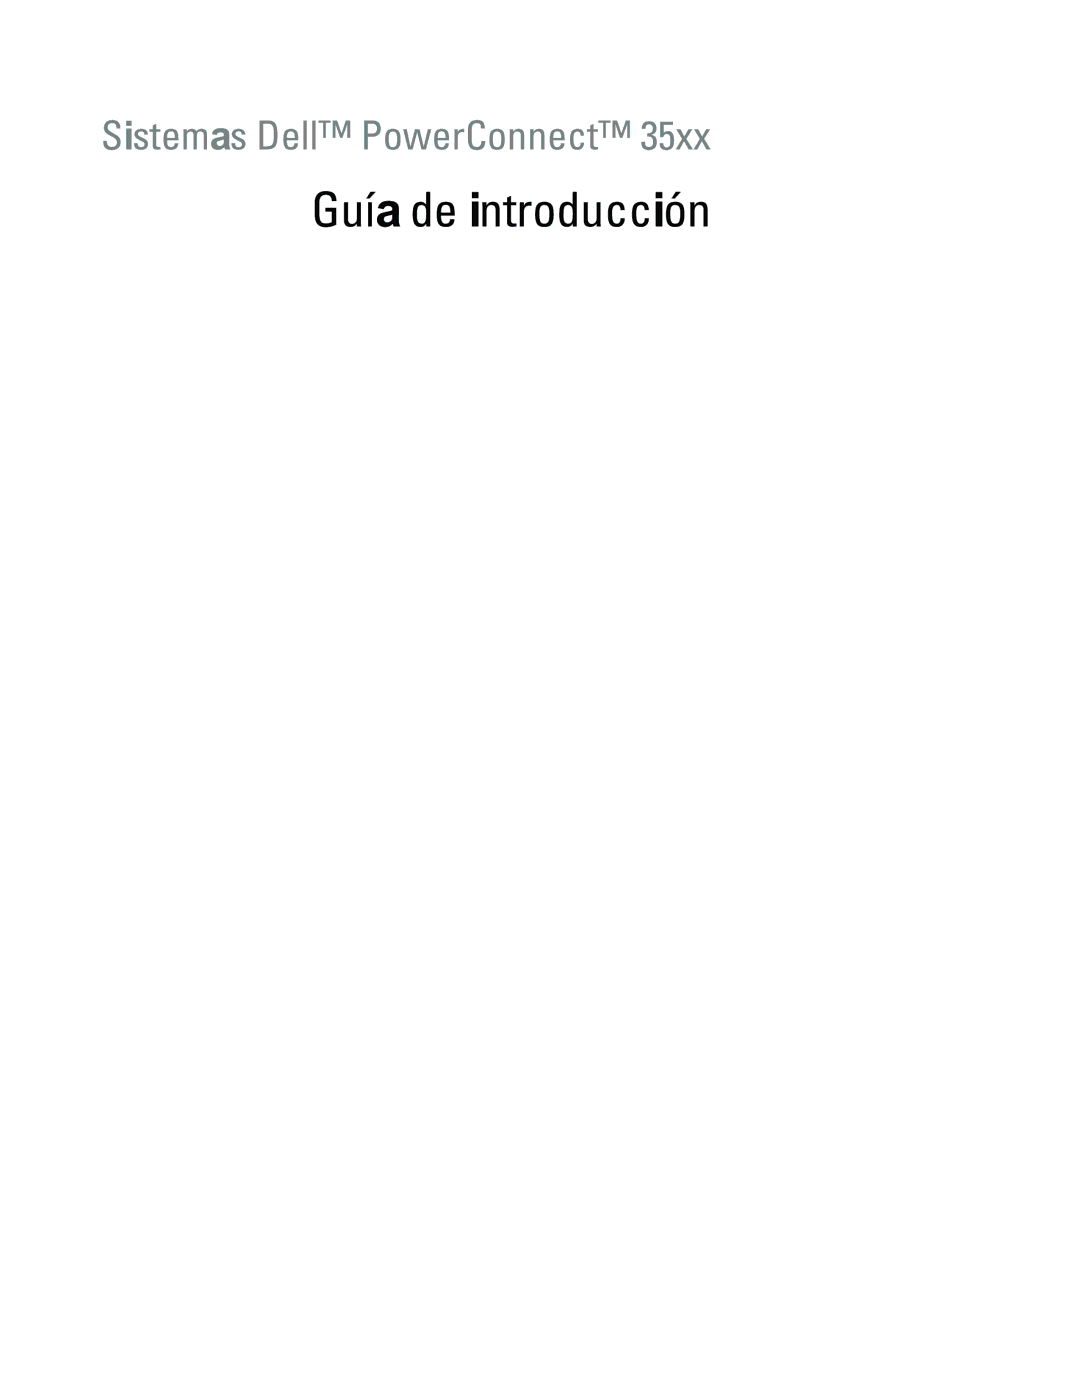 Dell 35XX manual Guía de introducción 